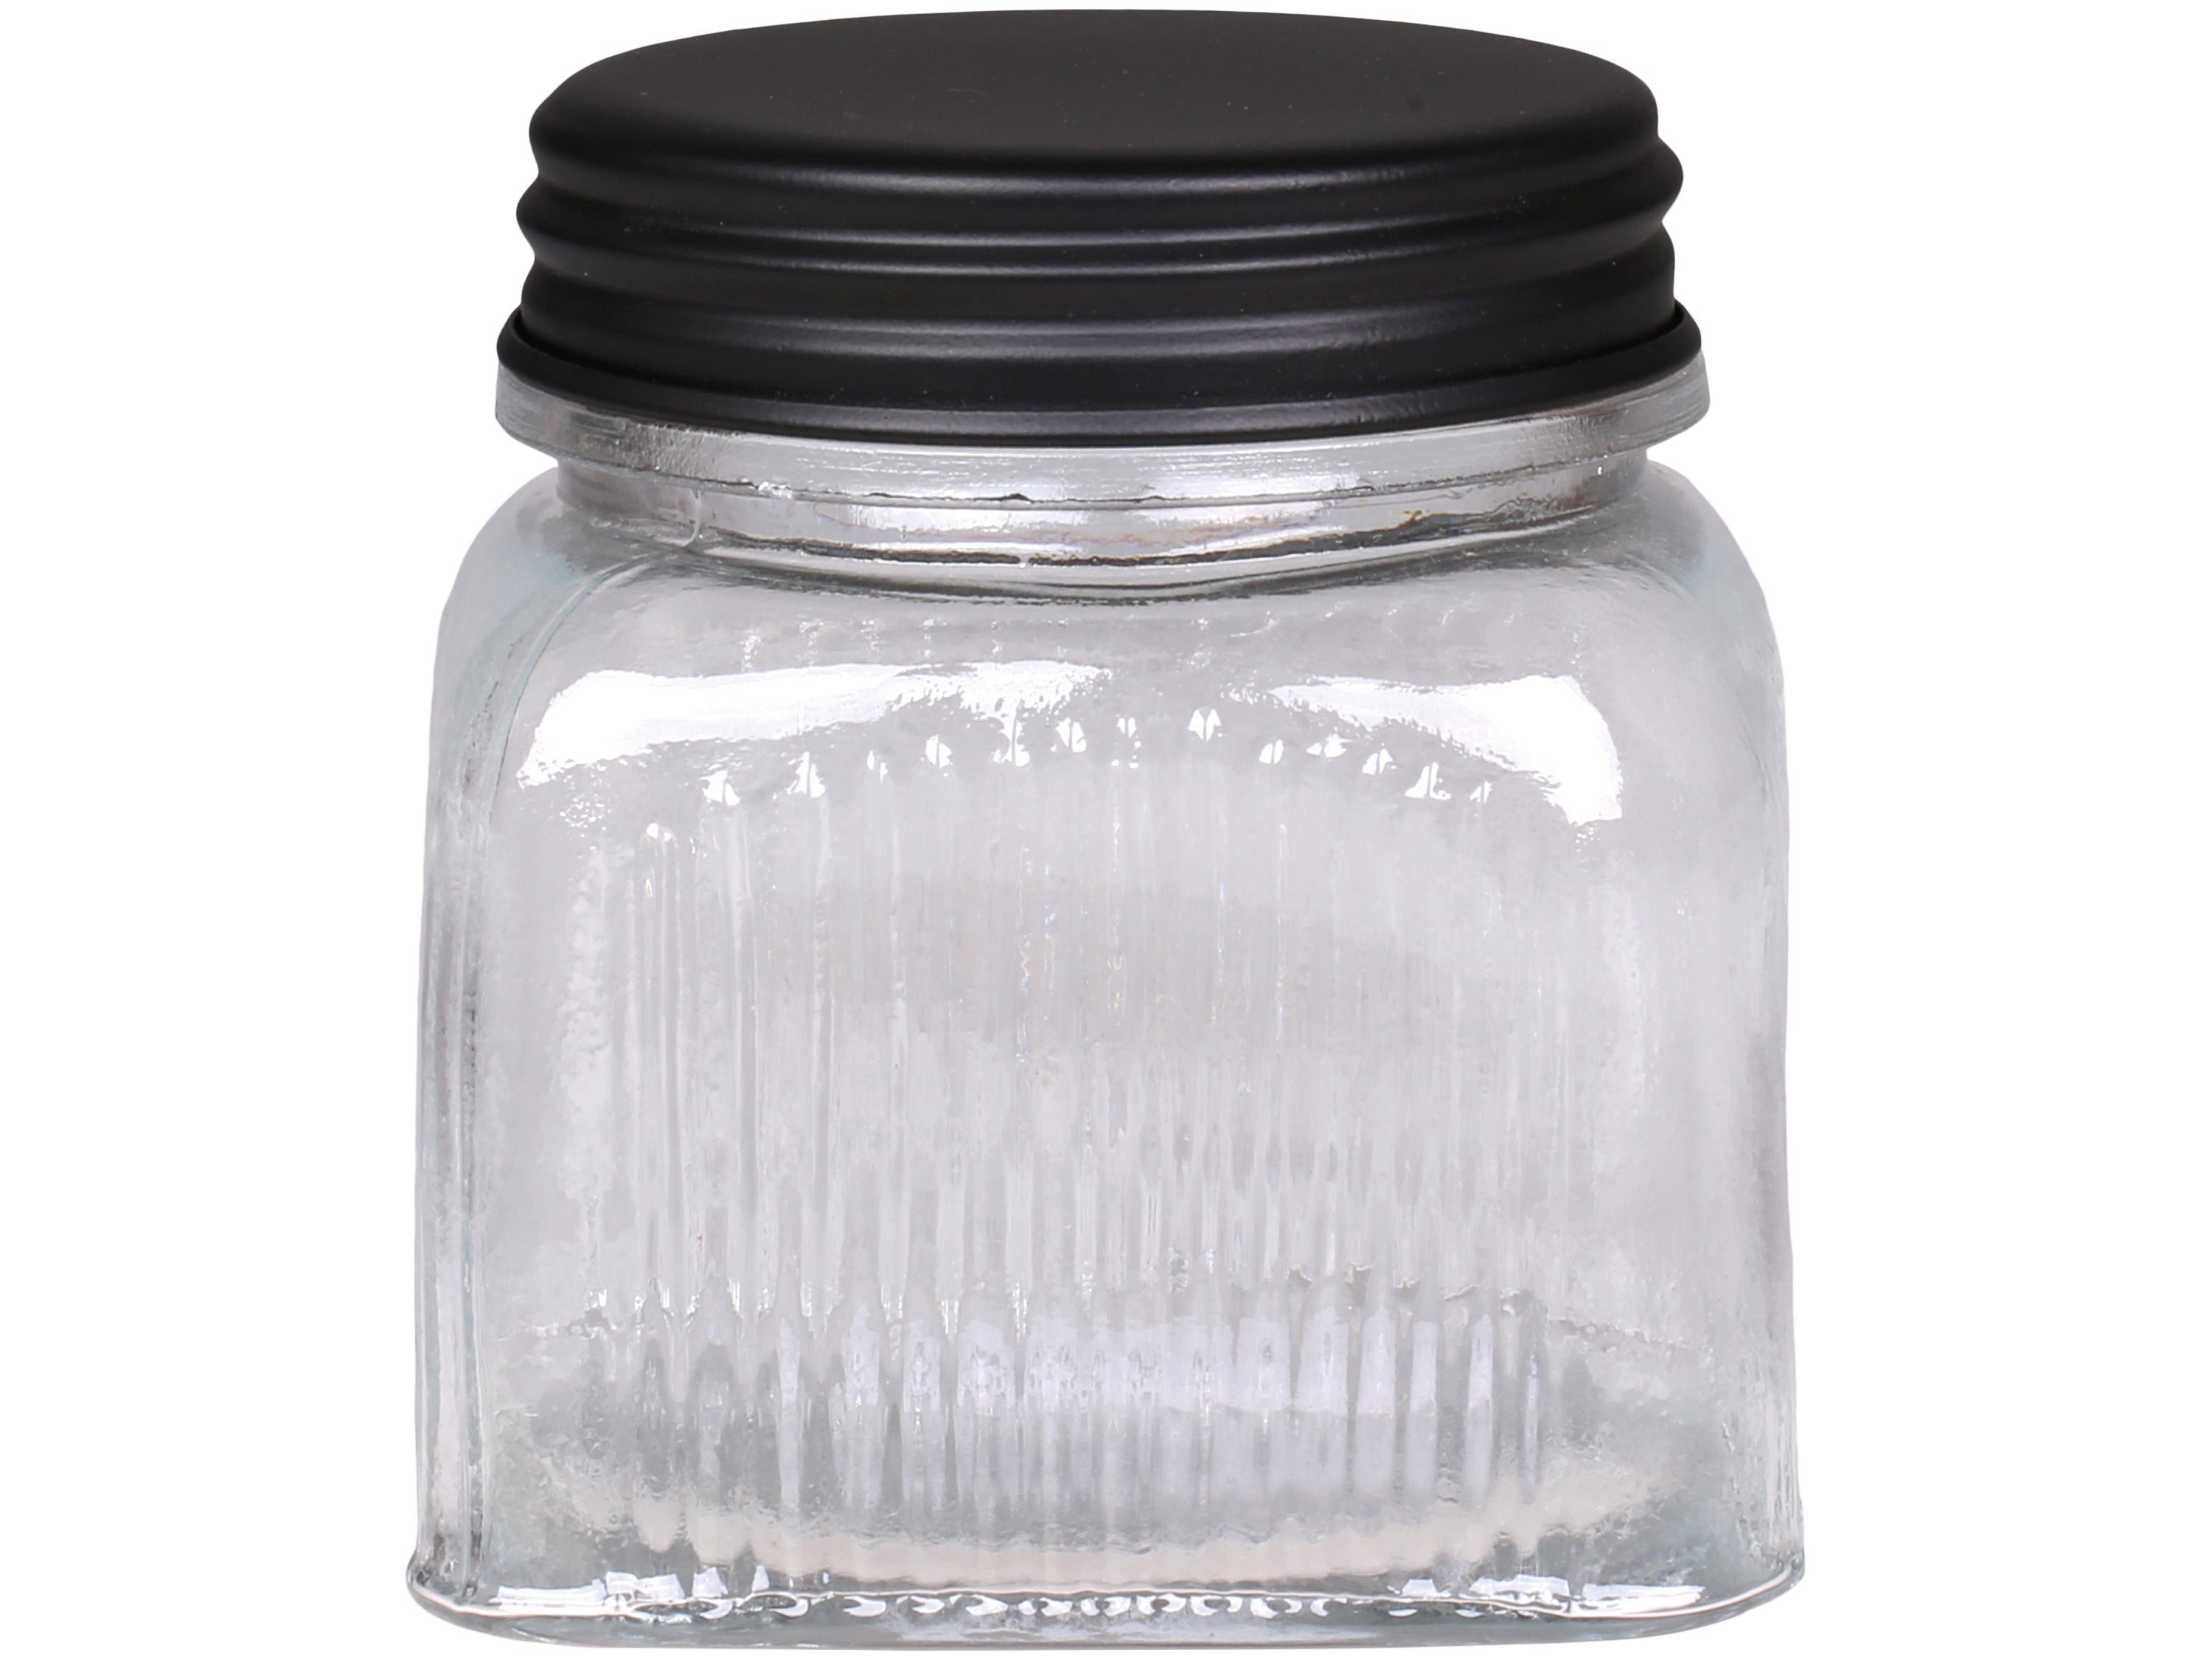 Storage Jar With Grooves & Black Lid